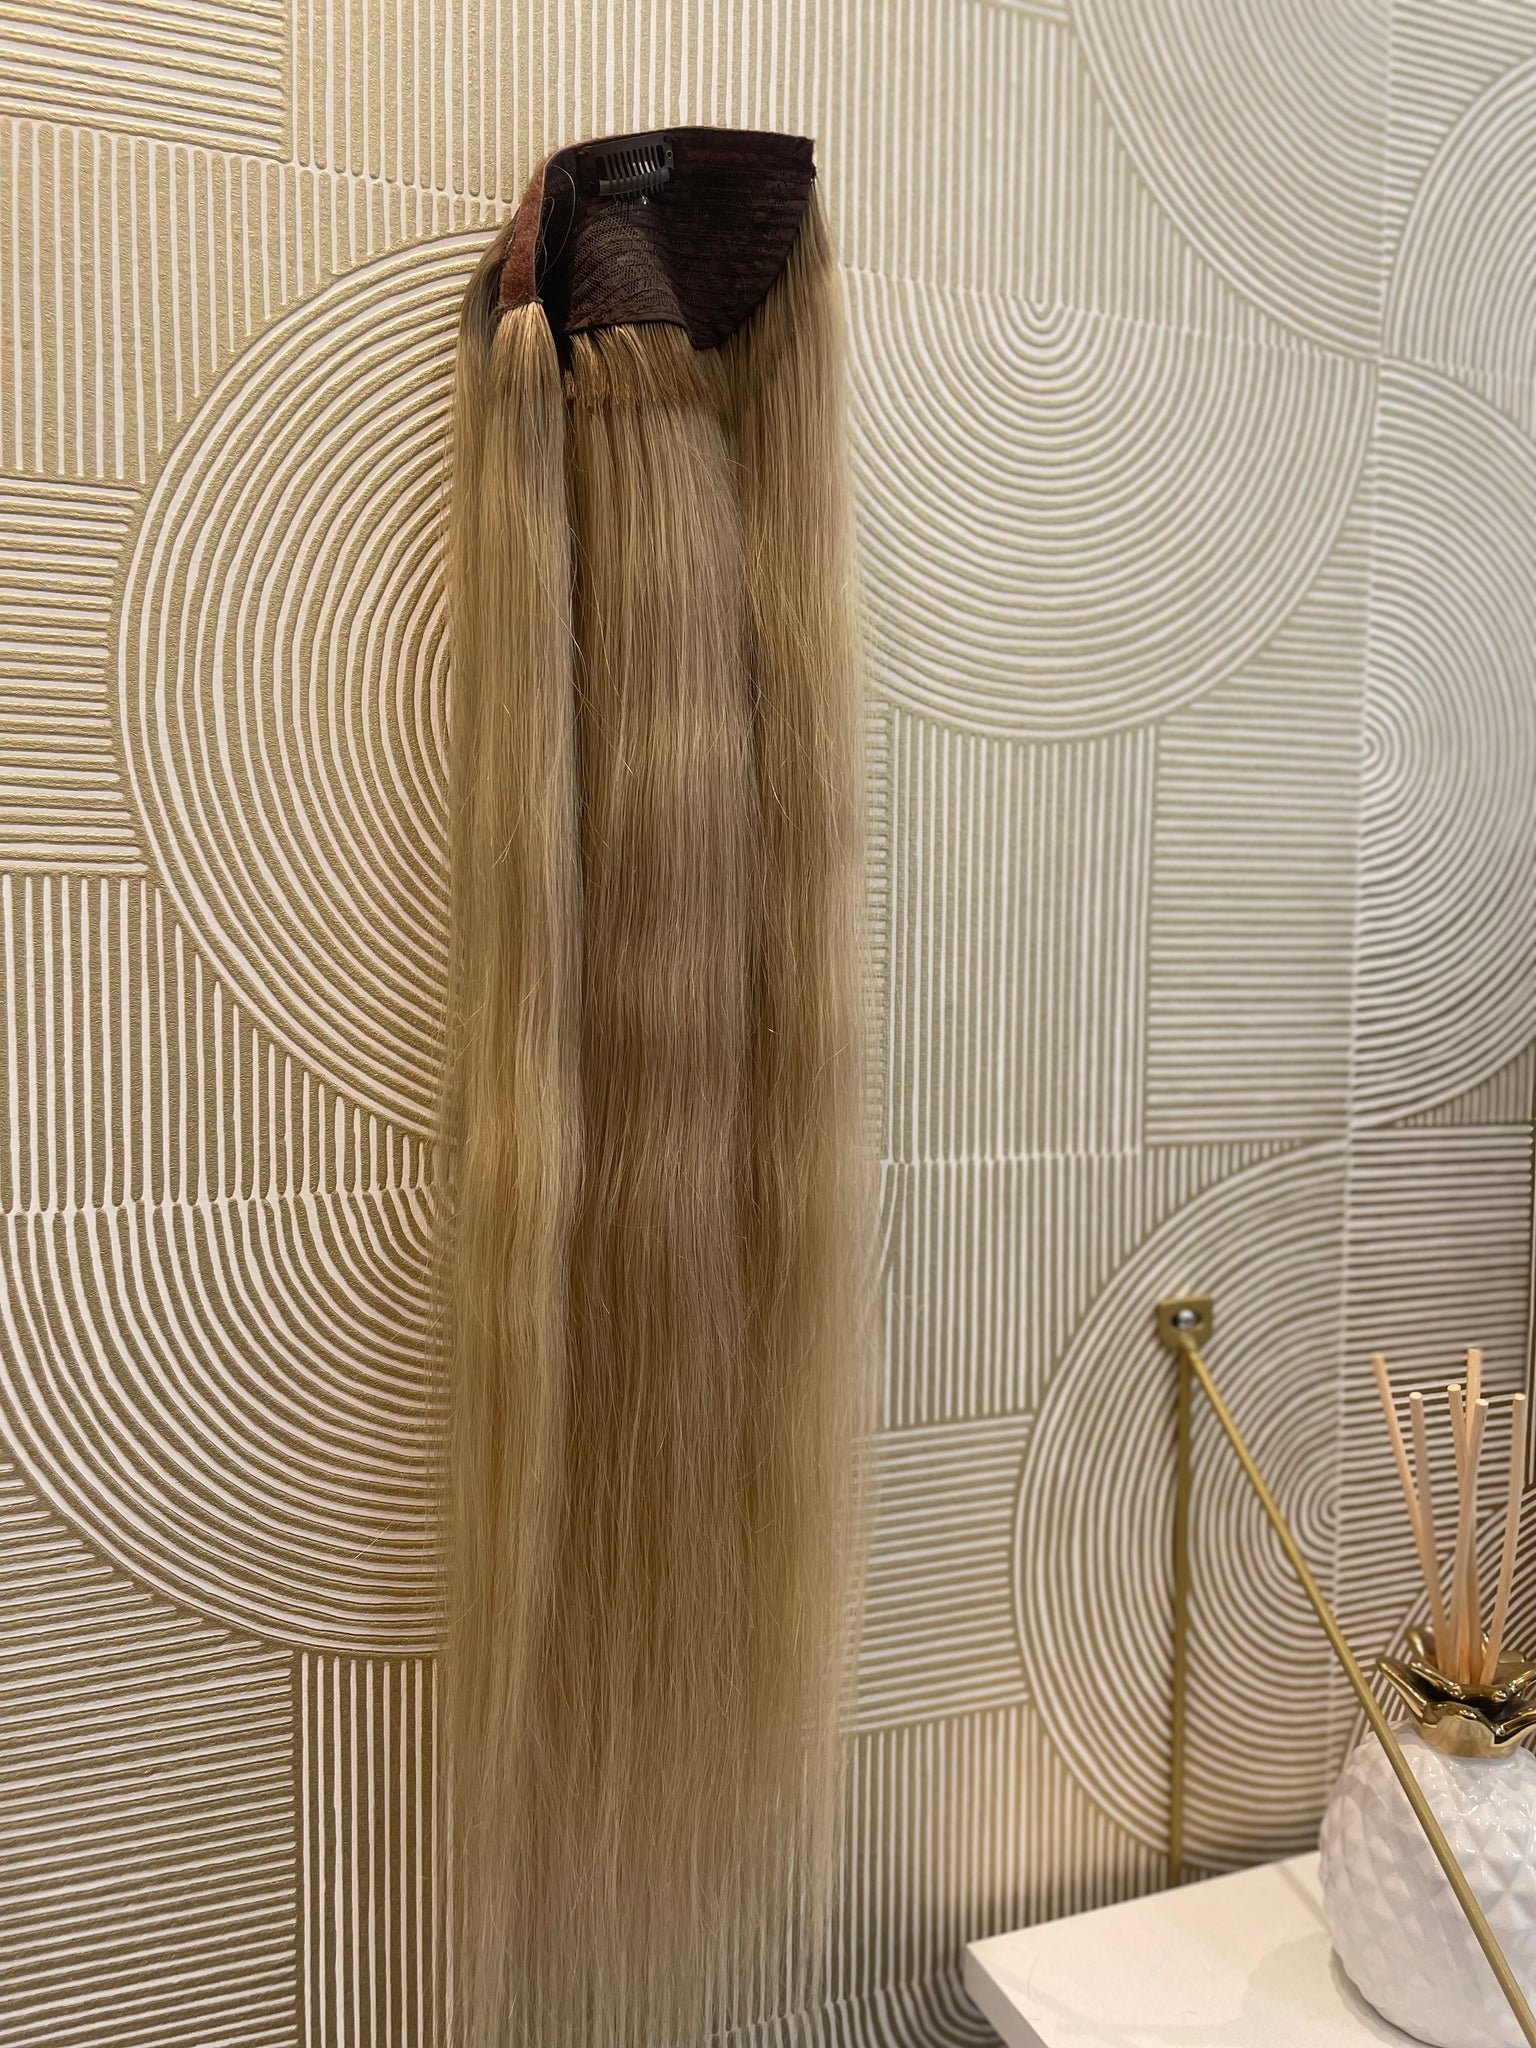 Sophie - queue de cheval / 22 inch / russian hair